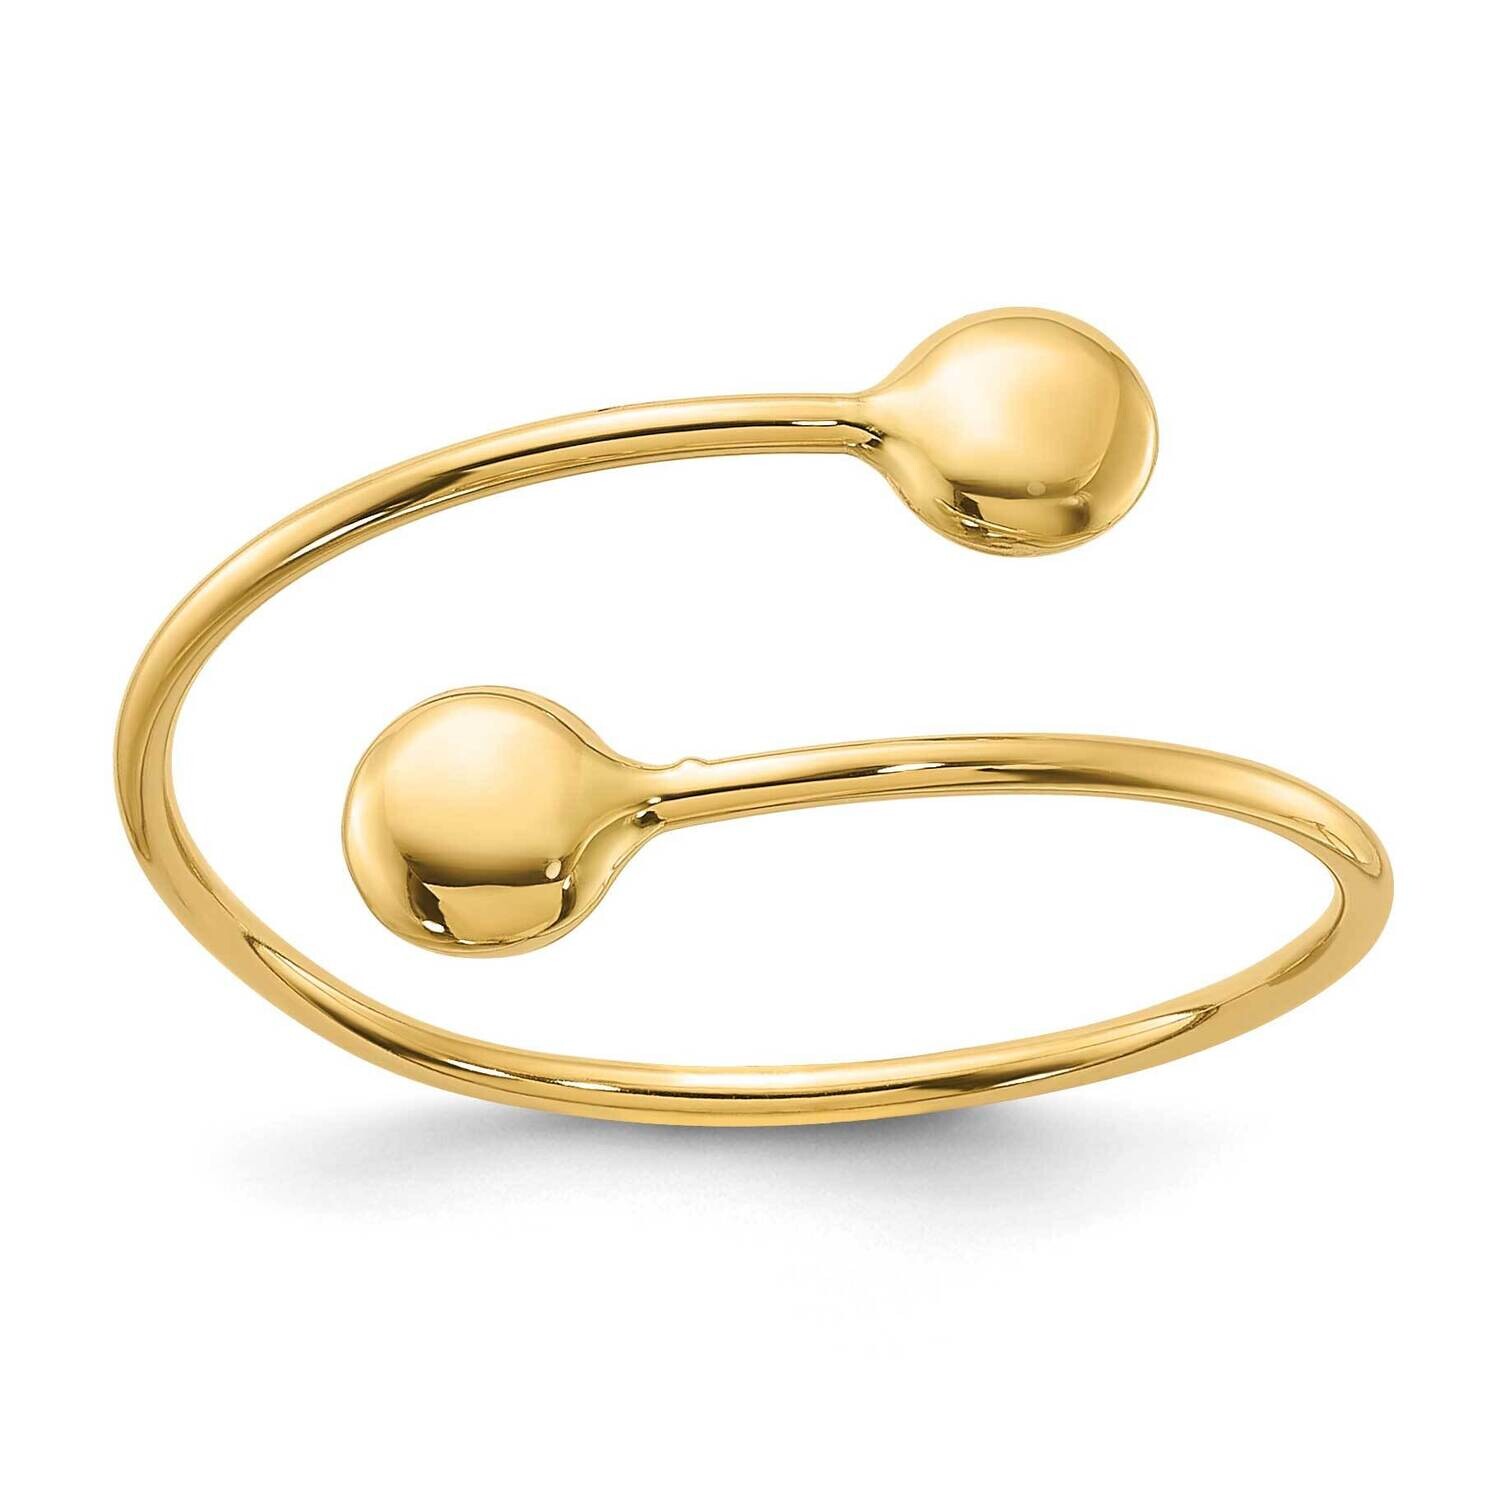 Adjustable Fashion Ring 14k Polished Gold R961